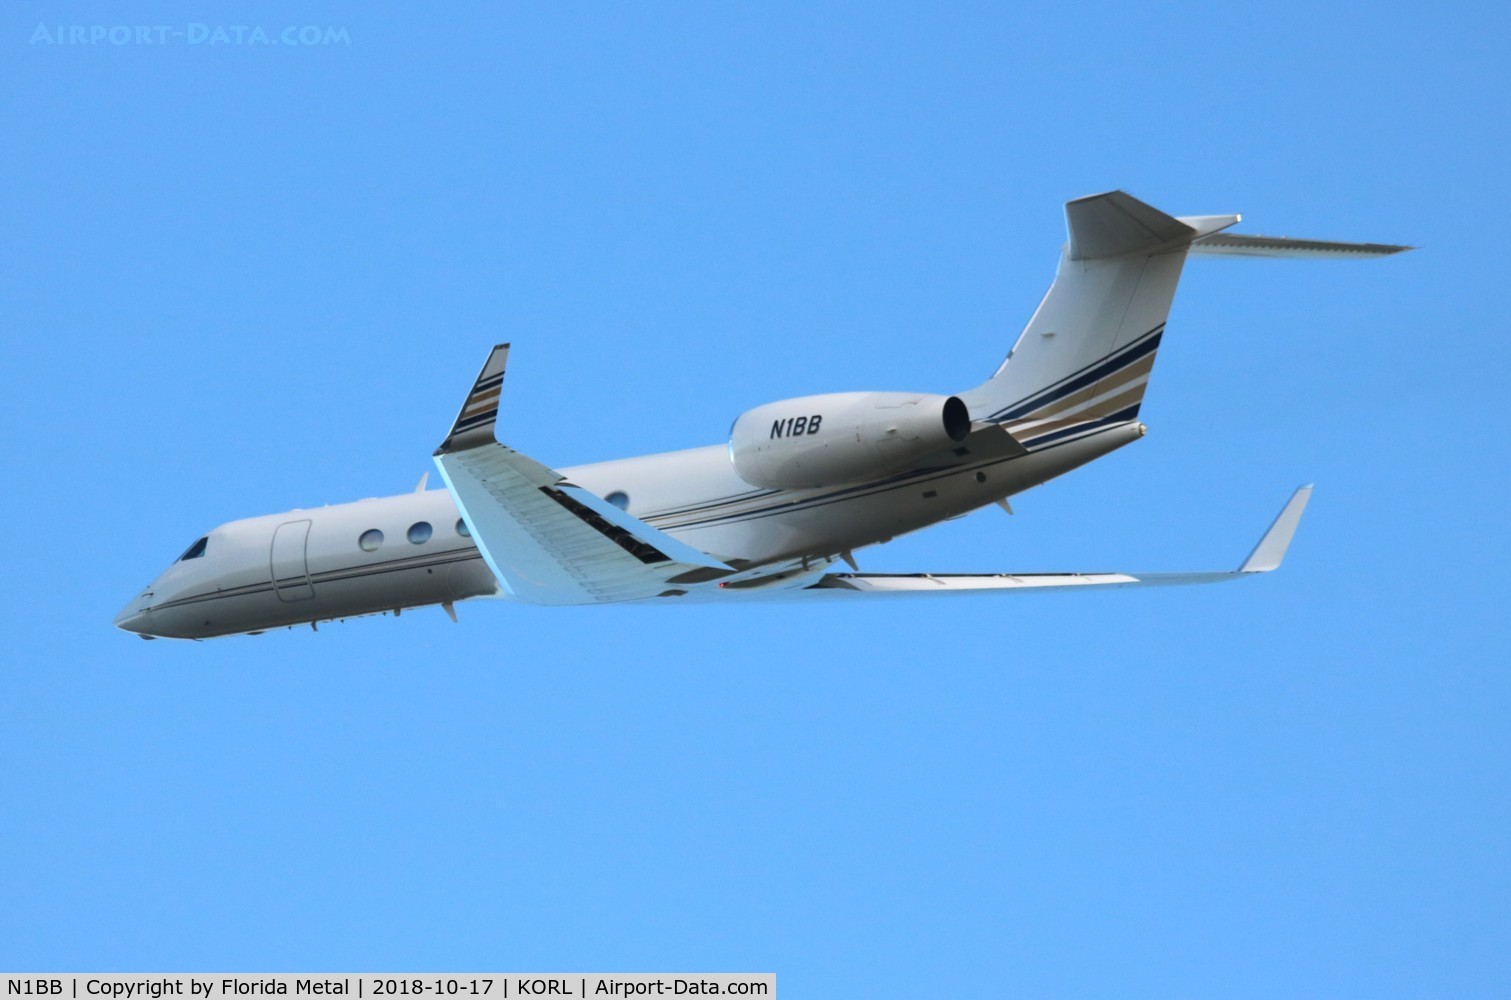 N1BB, 2001 Gulfstream Aerospace G-V C/N 660, G-V zx